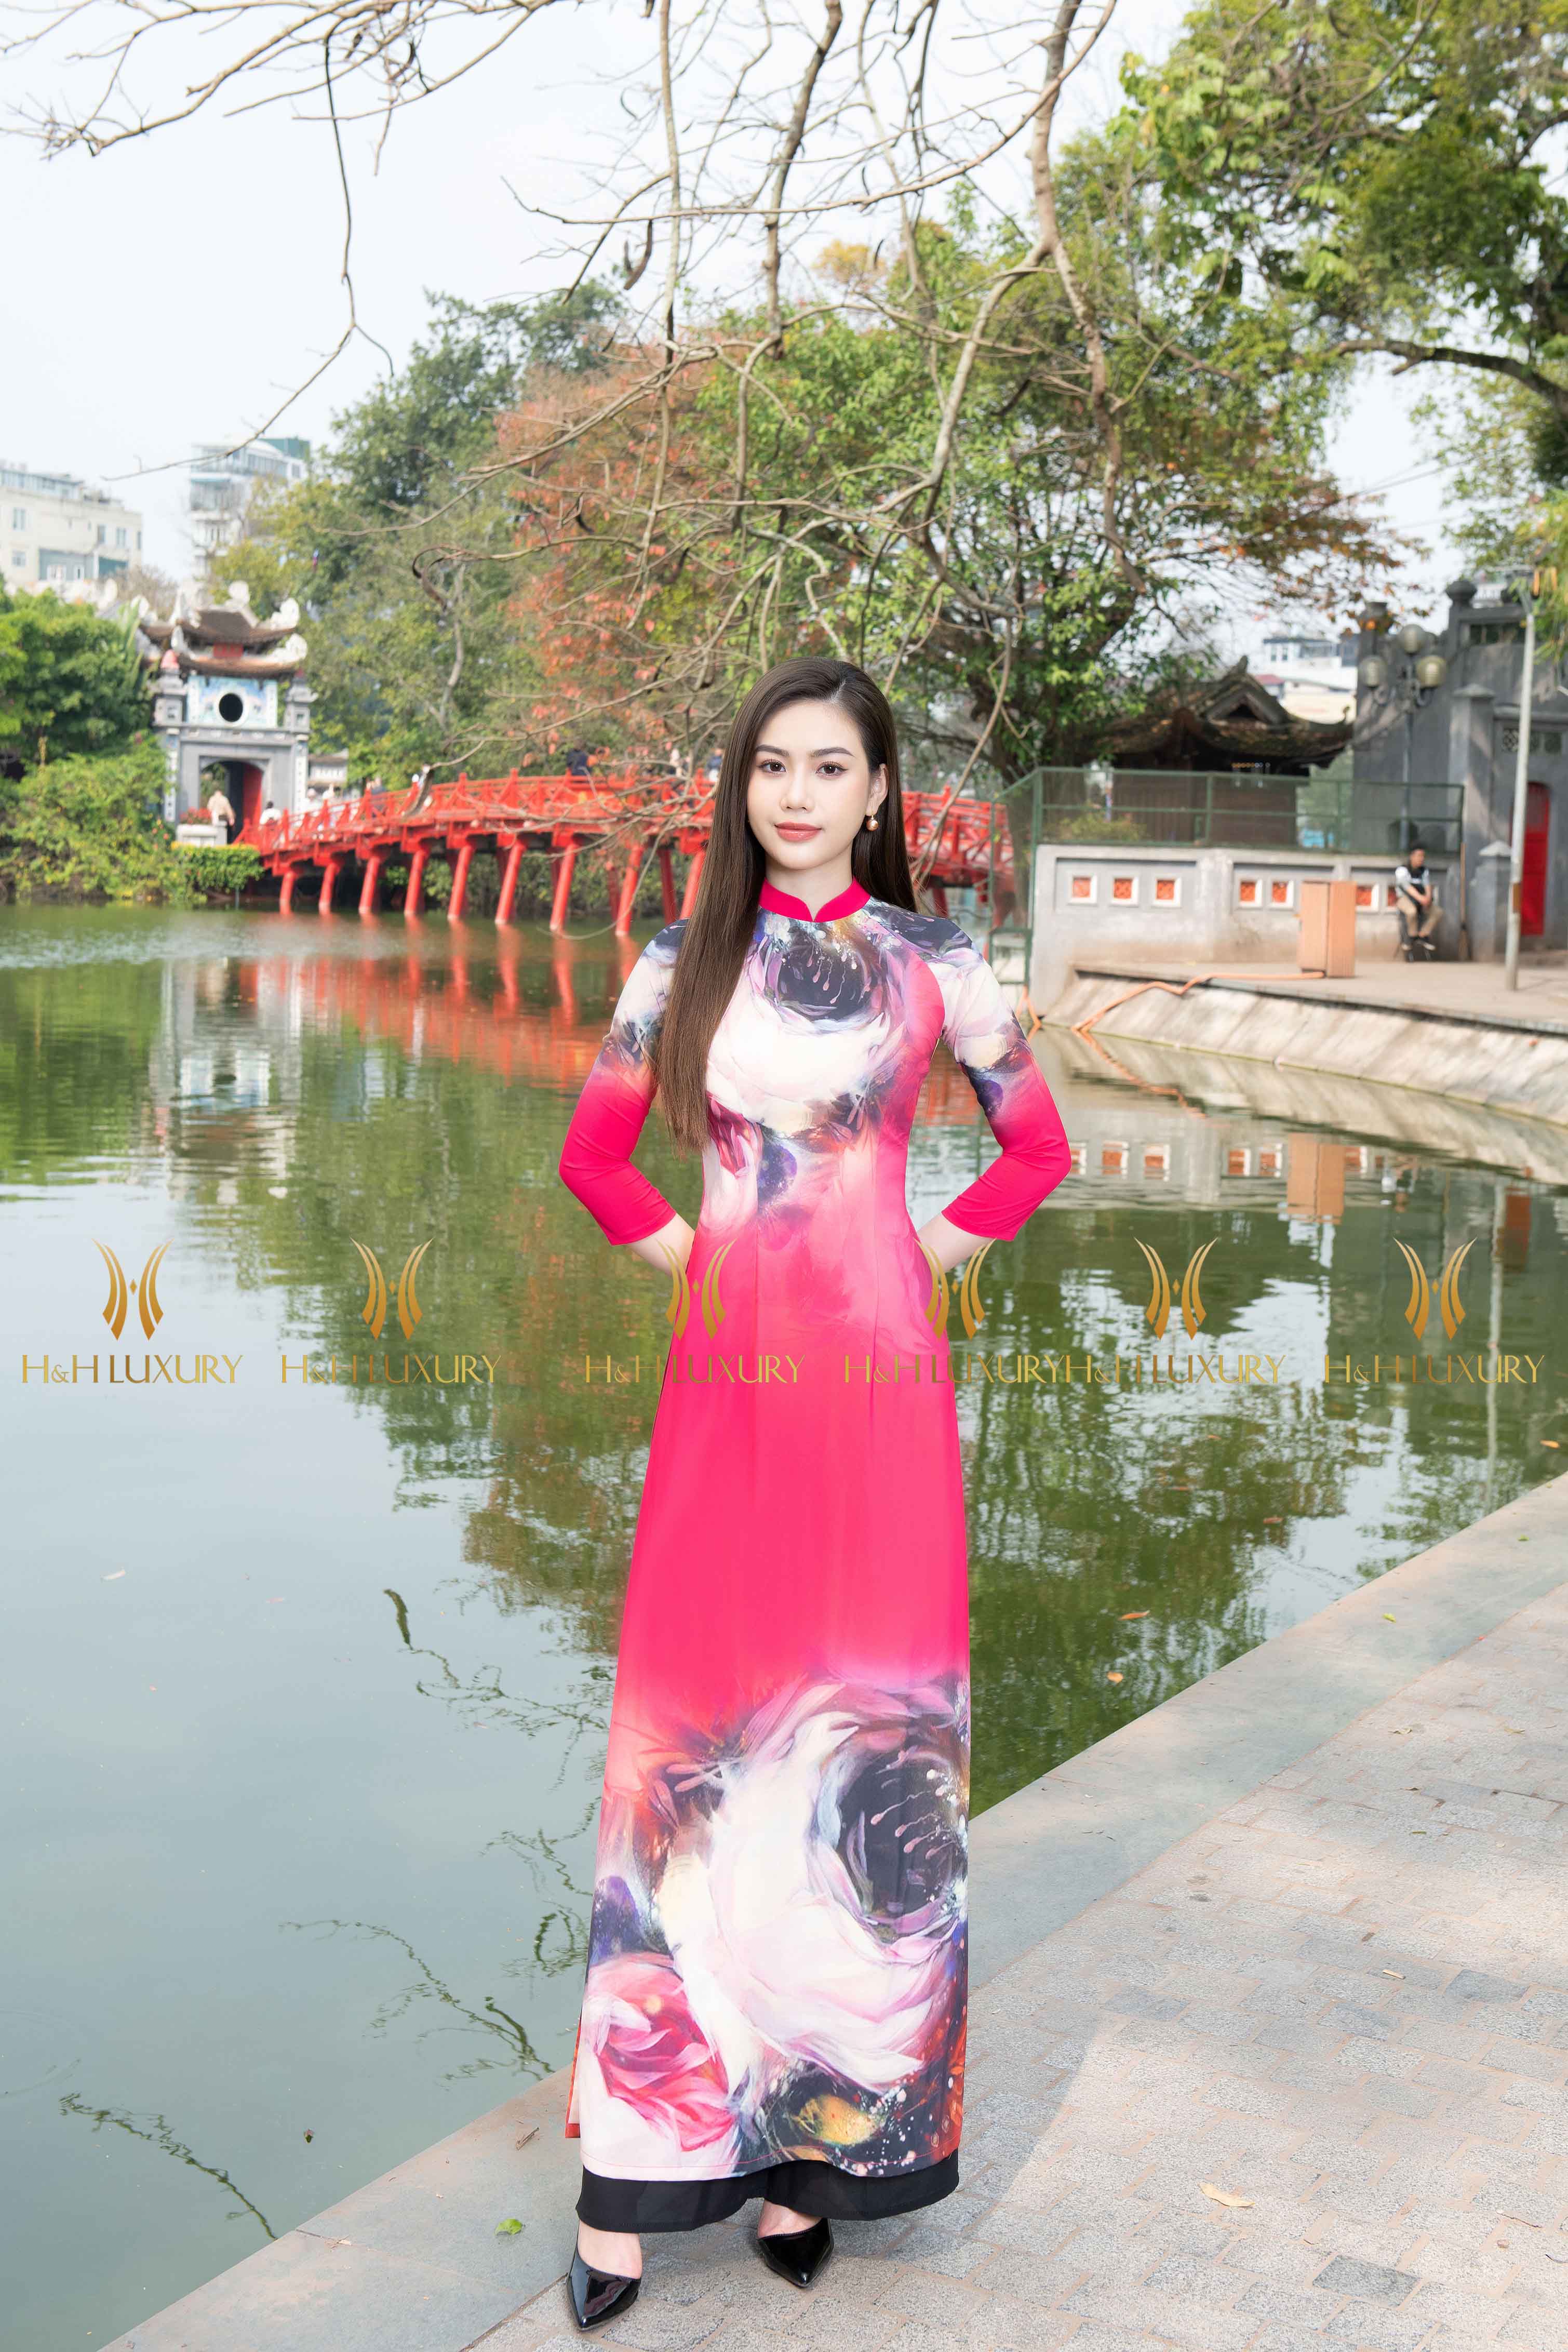 Áo dài lụa là một trong những trang phục truyền thống đặc trưng của Việt Nam. Với chất liệu lụa cao cấp và những họa tiết độc đáo, áo dài lụa là biểu tượng của sự thanh lịch và tinh tế. Hãy xem hình ảnh liên quan để được ngắm nhìn những chiếc áo dài lụa đẹp nhất cùng với những lời chúc tốt đẹp cho năm mới.